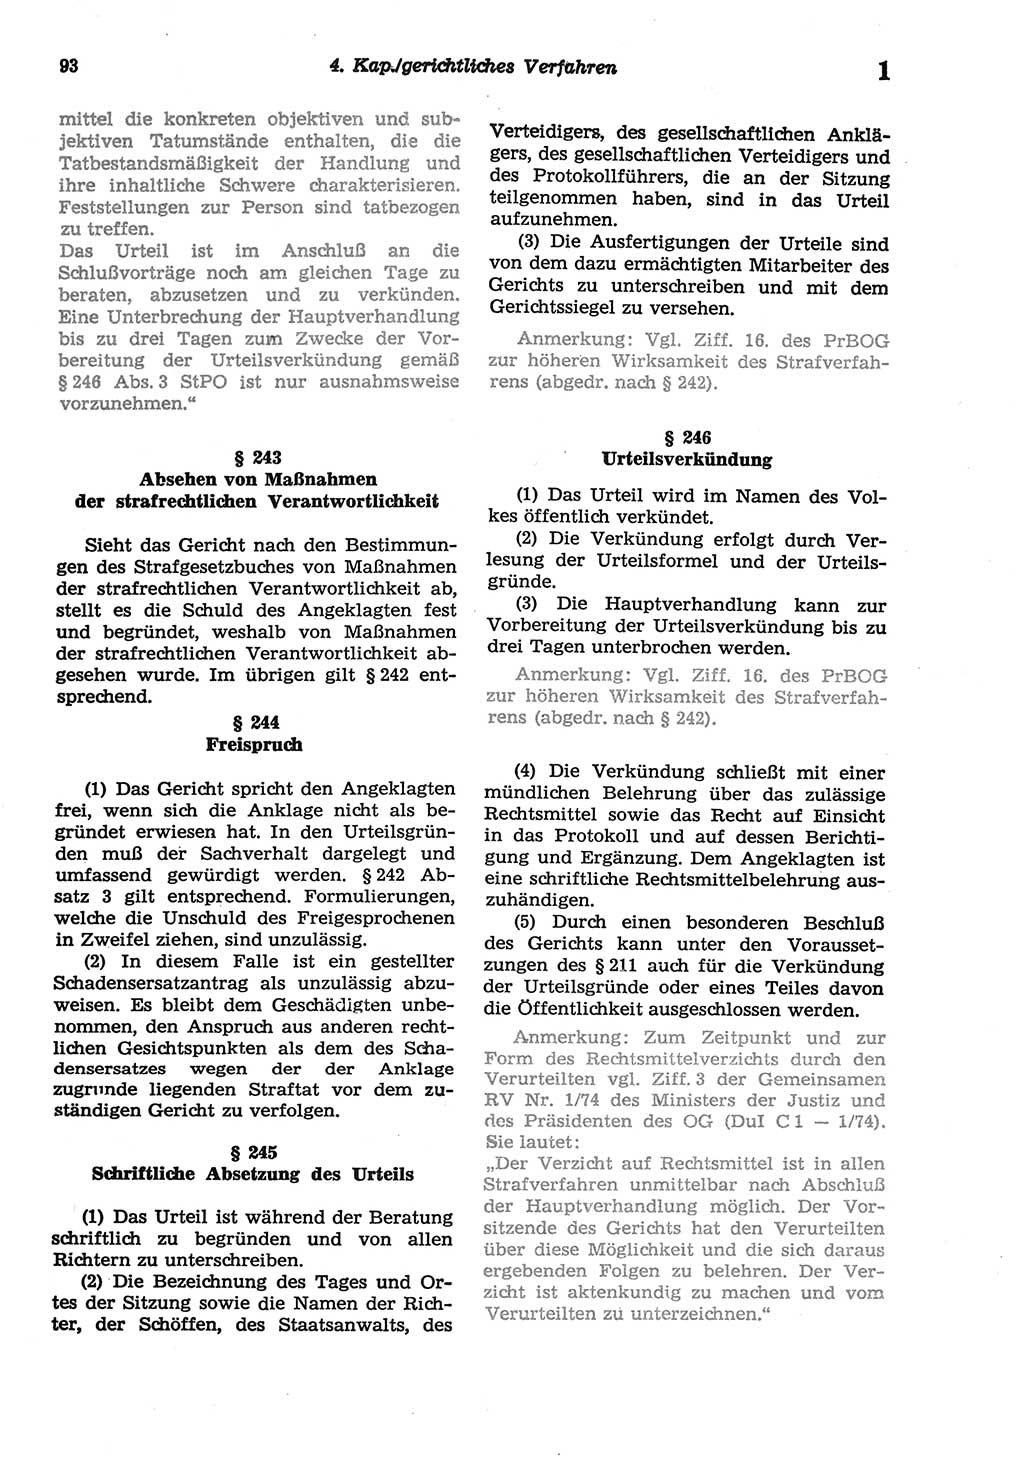 Strafprozeßordnung (StPO) der Deutschen Demokratischen Republik (DDR) sowie angrenzende Gesetze und Bestimmungen 1977, Seite 93 (StPO DDR Ges. Best. 1977, S. 93)